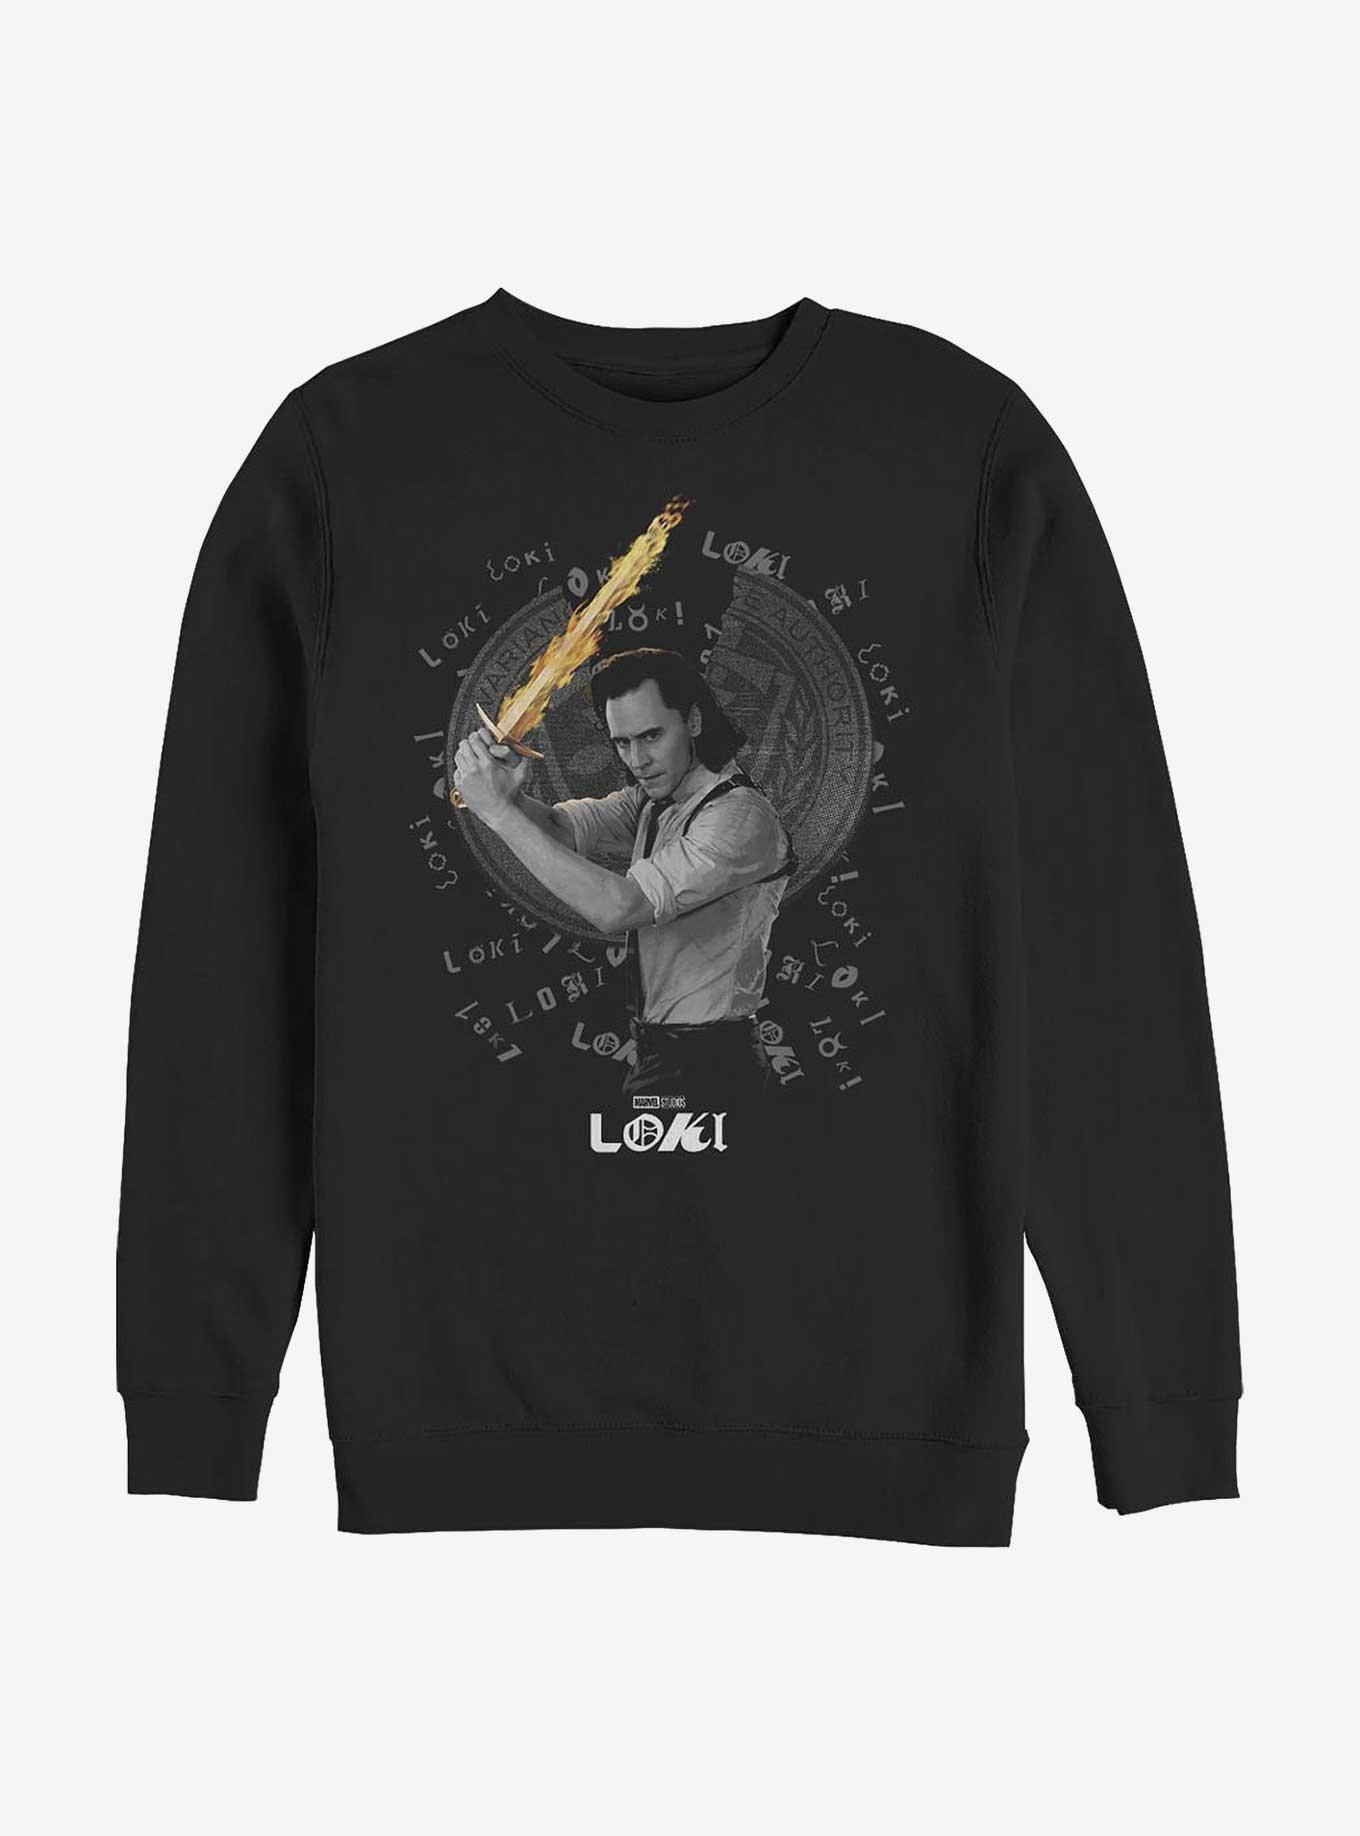 Marvel Loki Laevateinn Sword Sweatshirt, BLACK, hi-res